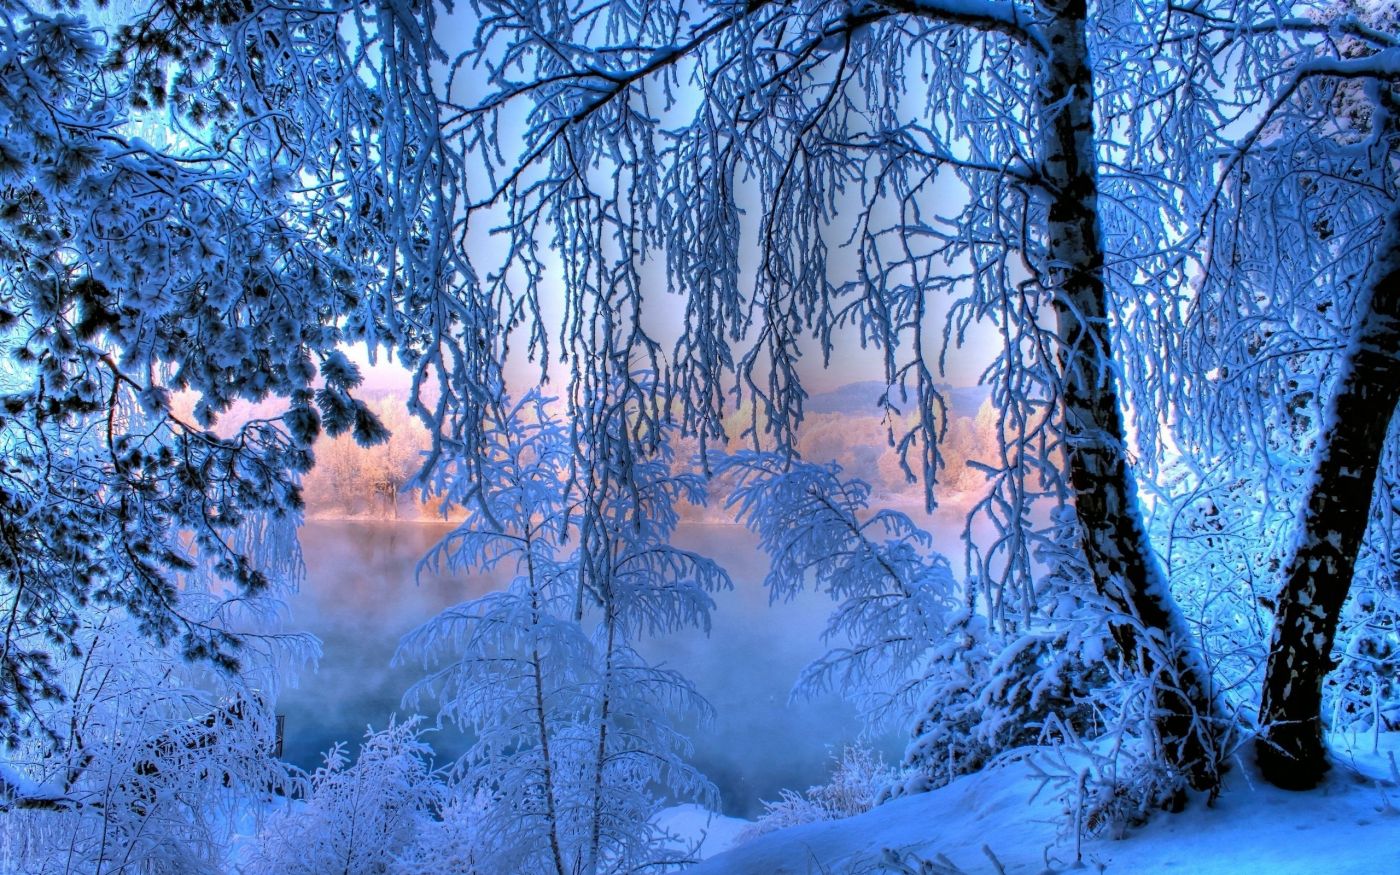 高清晰冬季蓝色白色雪景壁纸下载 欧莱凯设计网 08php Com